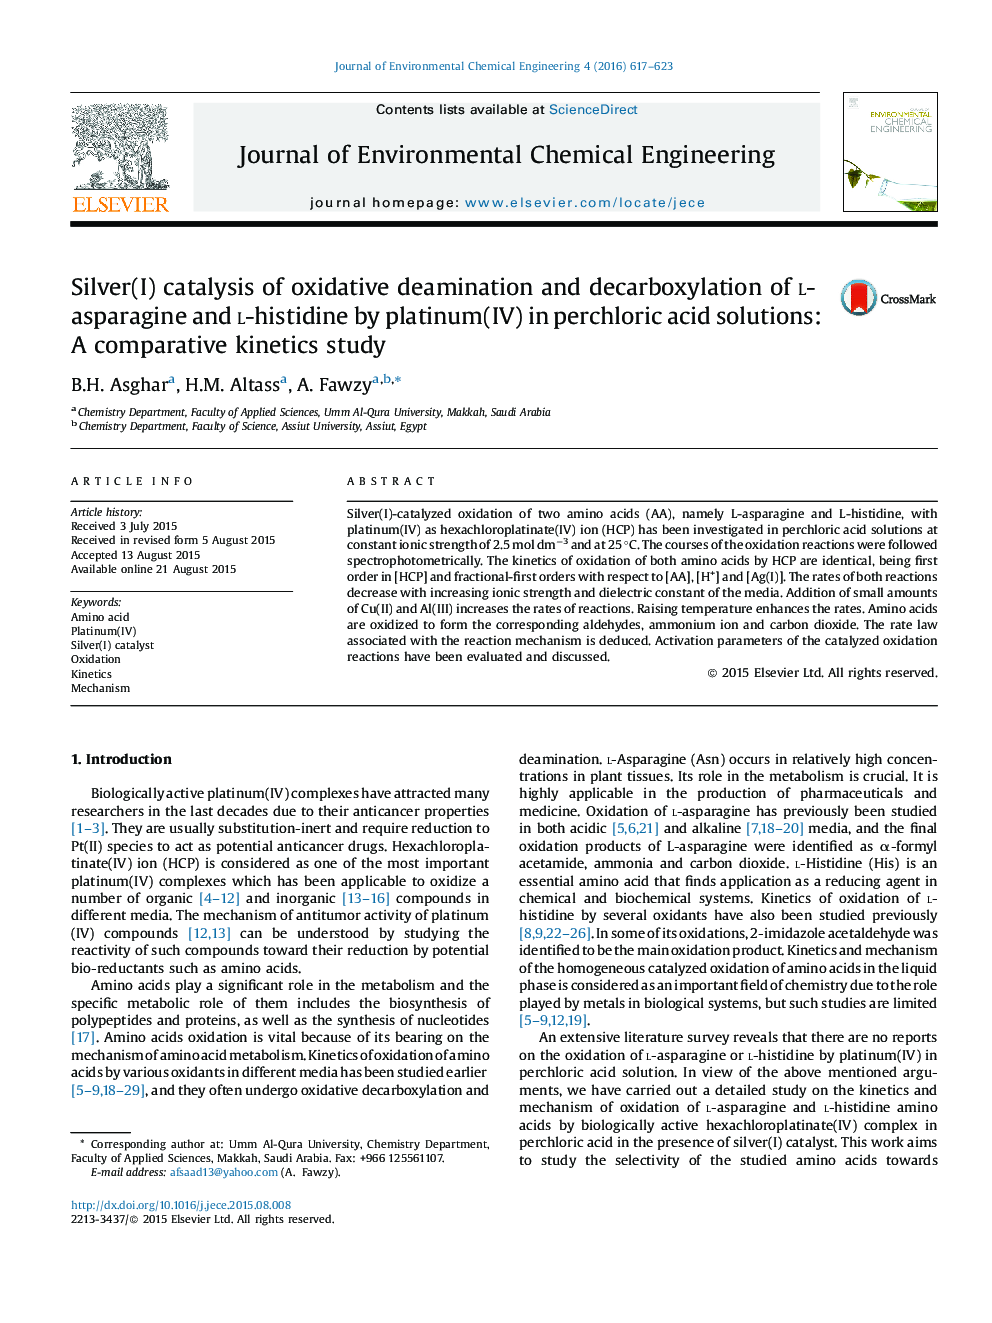 کاتالیزوری نقره ای دآمیناسیون اکسیداتیو و دکربوکسیلید کردن لارسپارین و ال-هیستیدین توسط پلاتین (IV) در محلول های اسید پرکلریک: مطالعه سینتیکی مقایسه ای